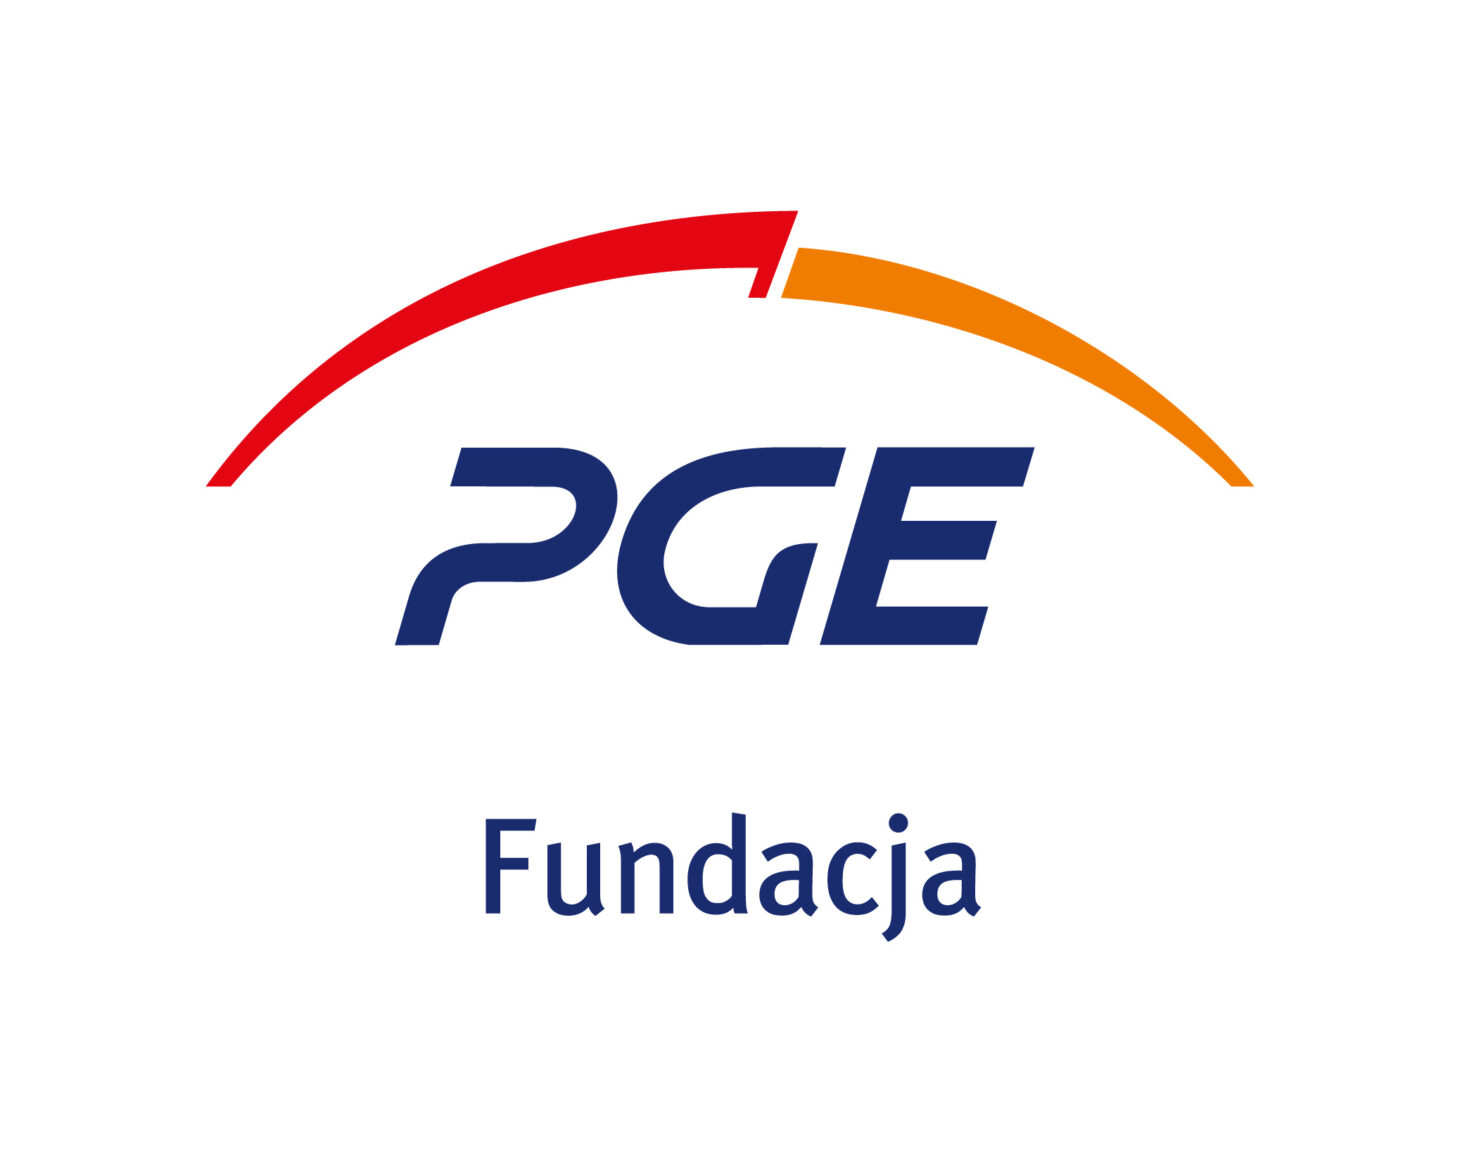 PGE fundacja logo